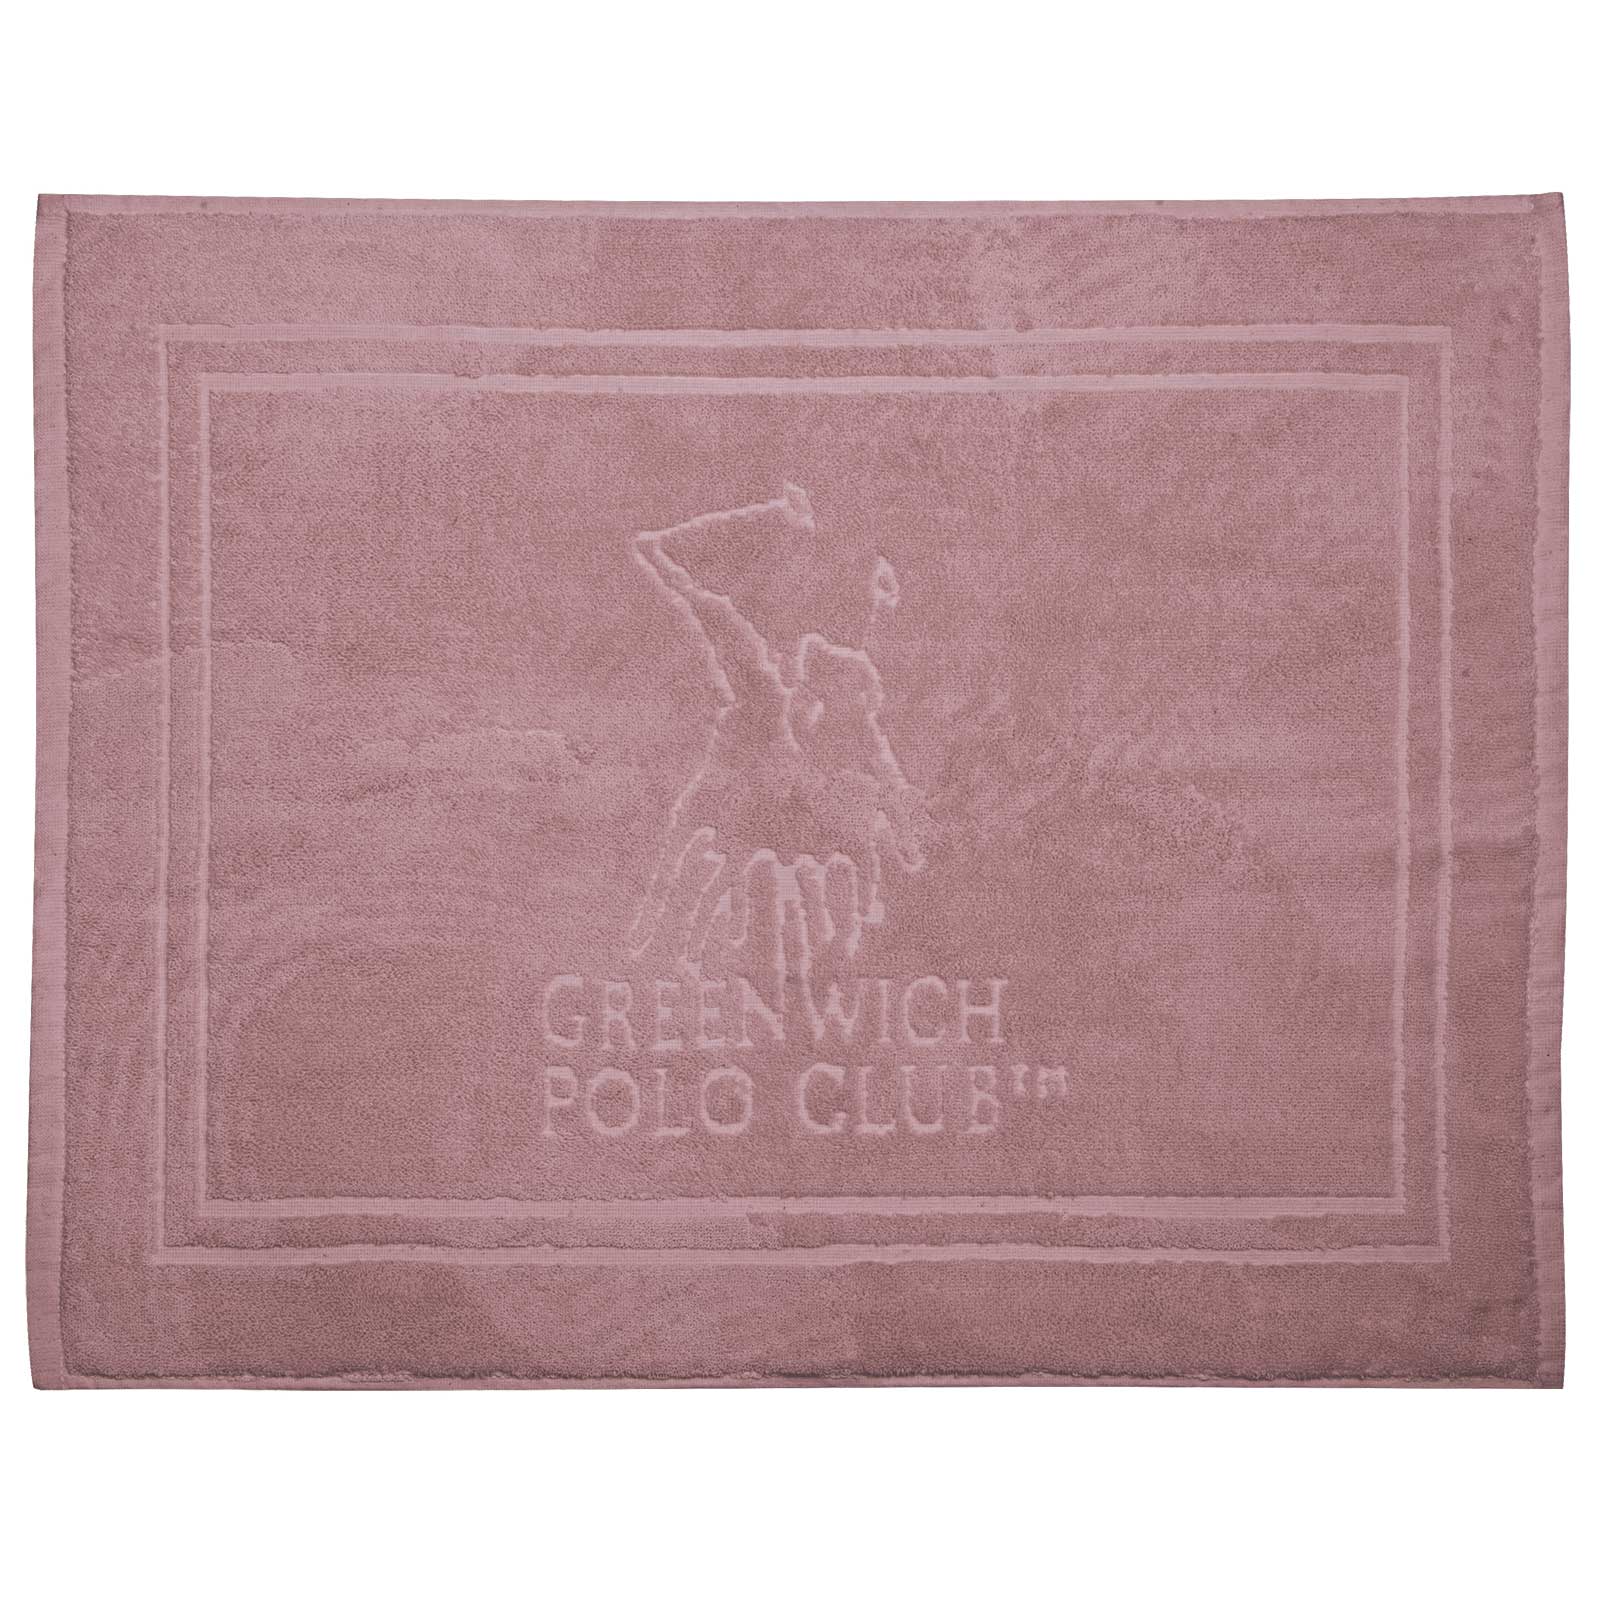 Greenwich Polo Club Ταπετο 50Χ70 3042 Ροζ Ροζ